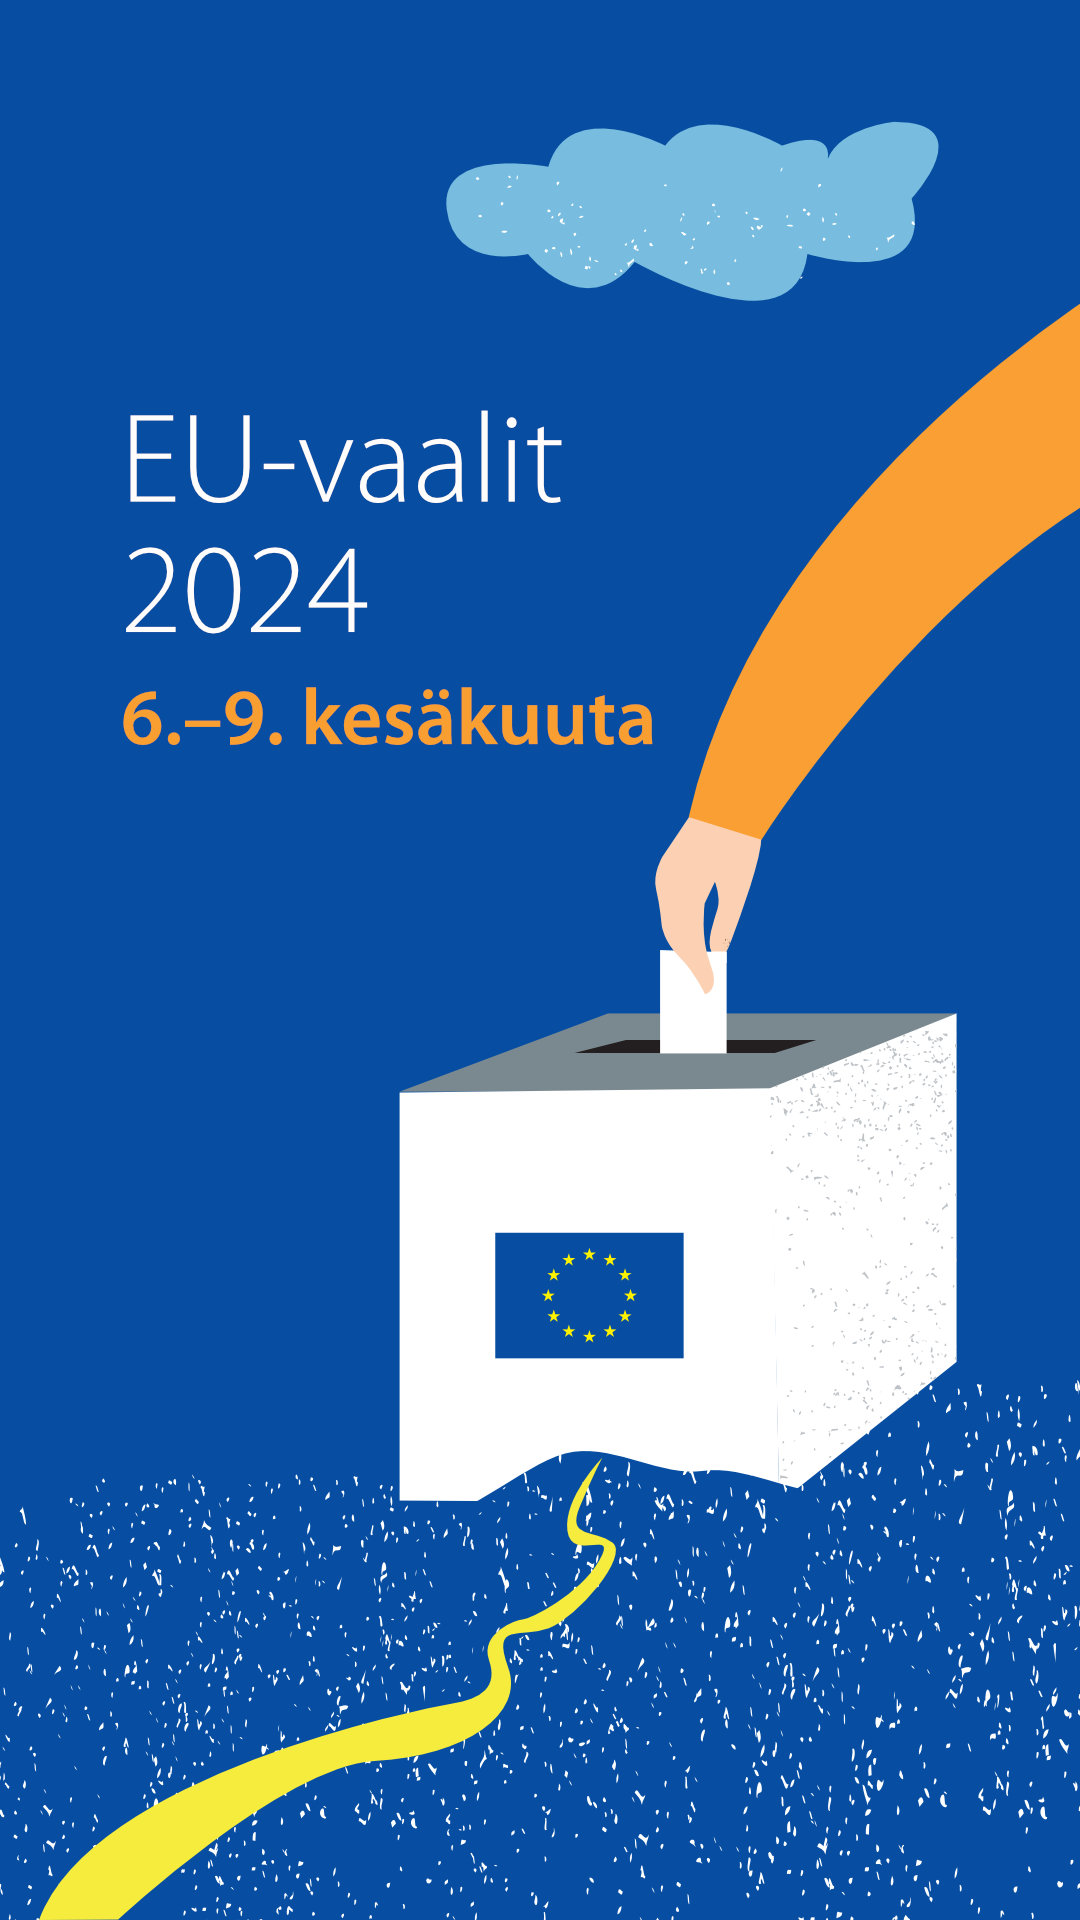 EU-vaalit 2024 - Story